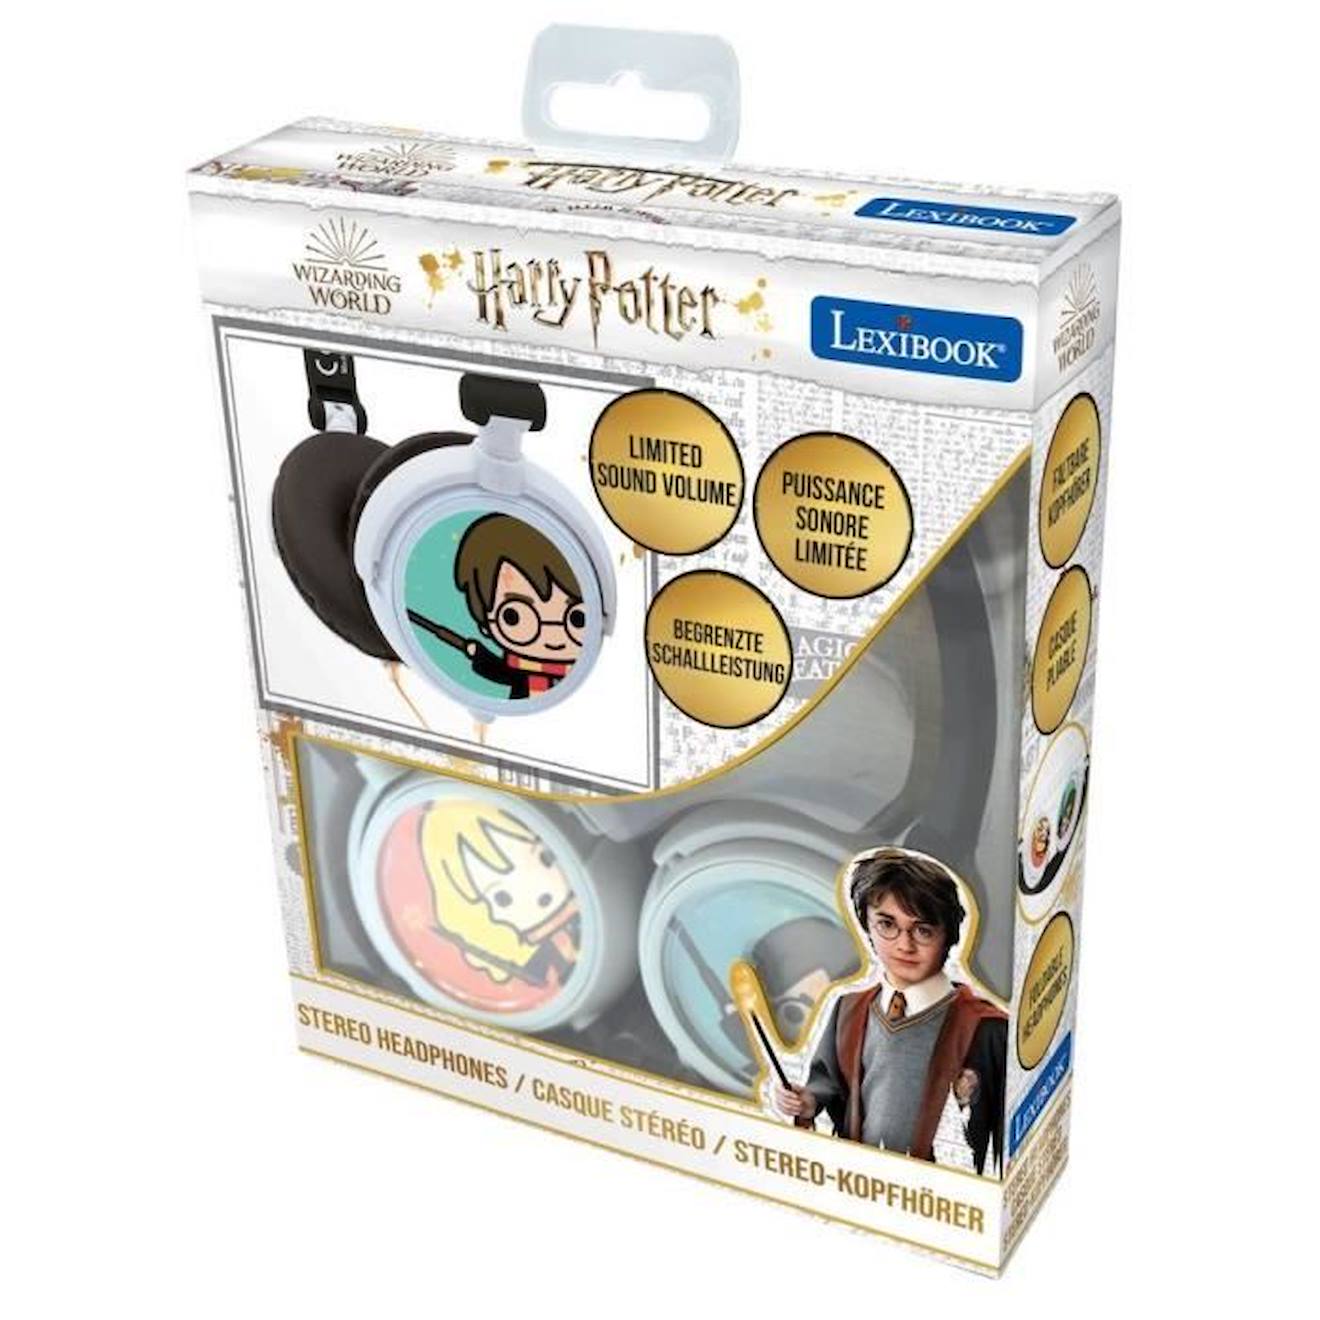 Casque Stéréo Filaire Pliable Pour Enfants Harry Potter - Lexibook - Limitation De Volume D'écoute M